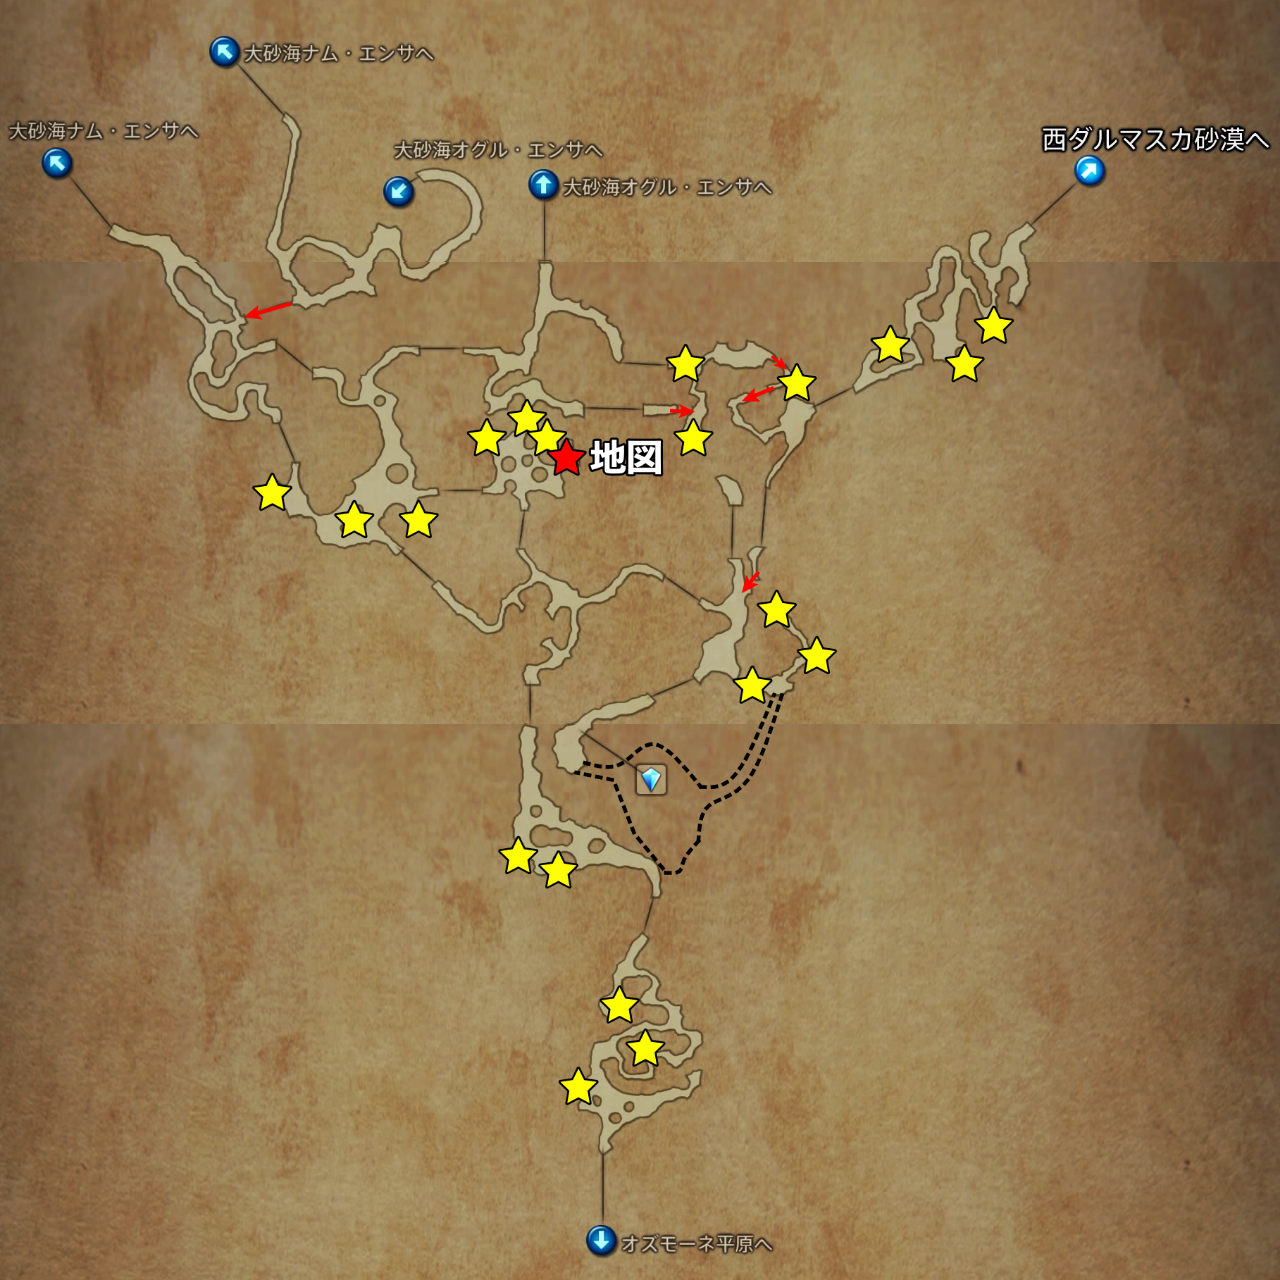 Ff12ザ ゾディアック エイジ ゼルテニアン洞窟のマップ トレジャー Ff12 ザゾディアックエイジ攻略まとめwiki Ps4 スイッチhdリマスター